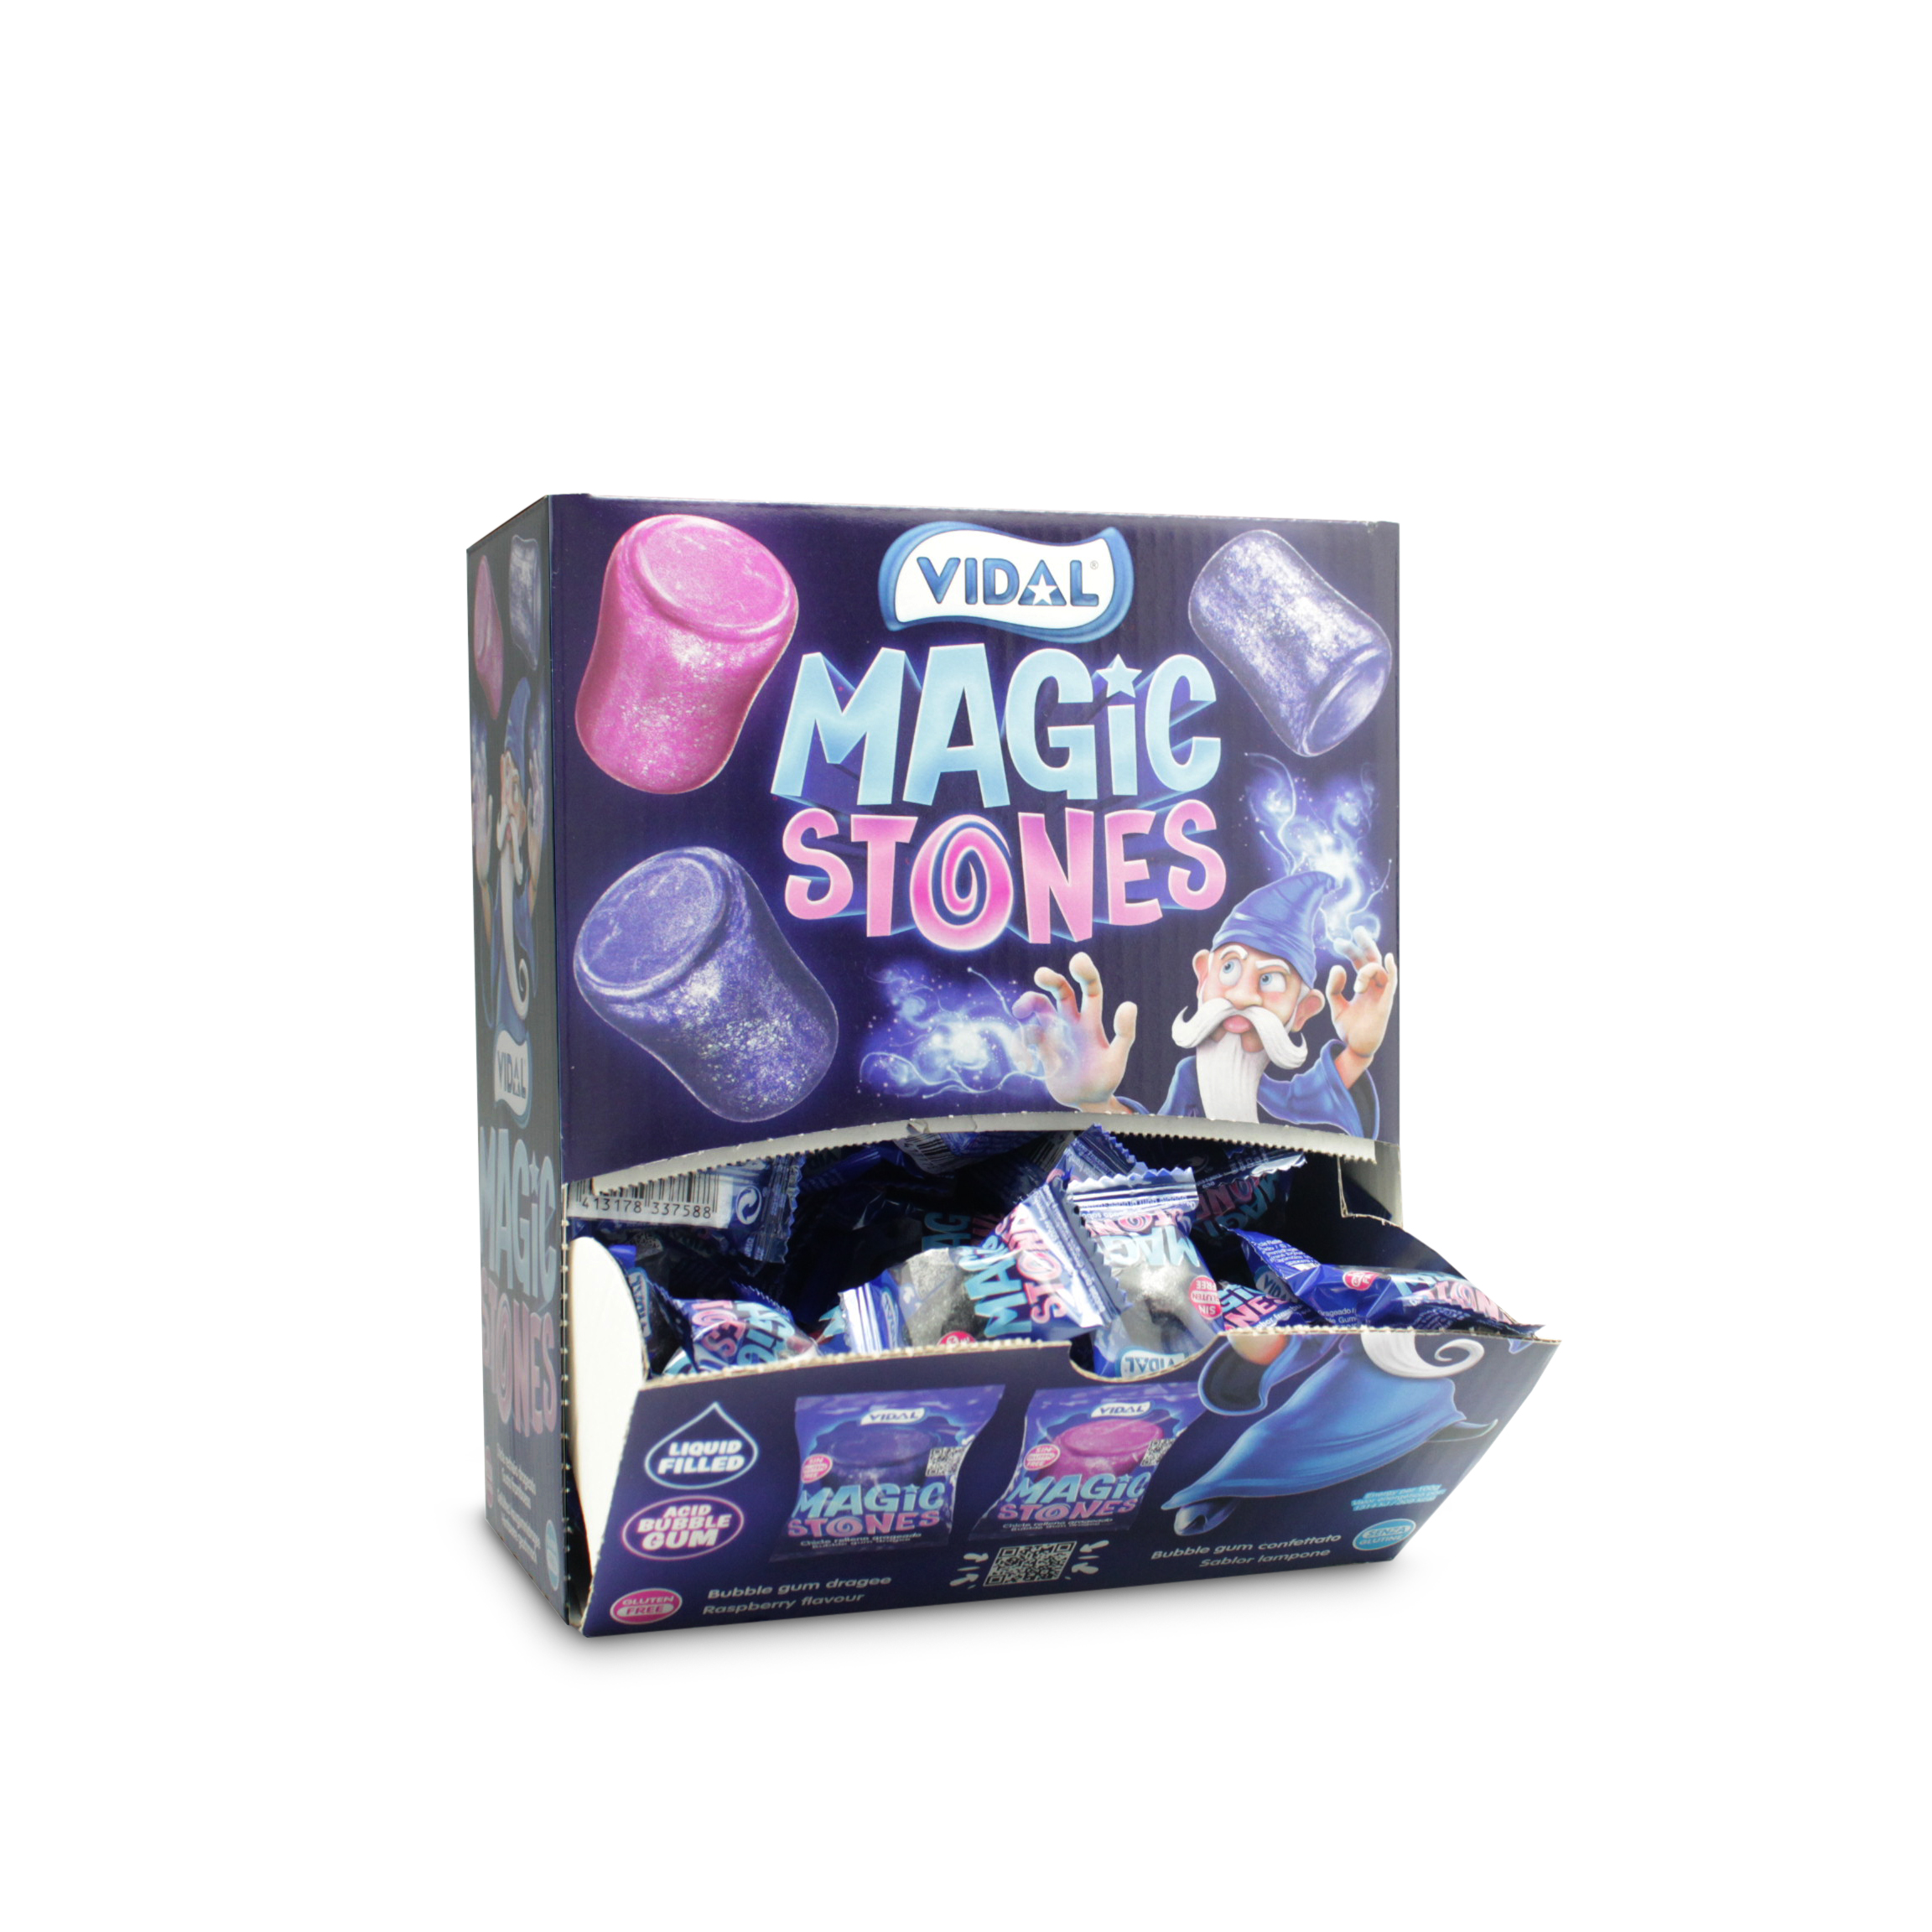 Kaugummi Magic Stones 200 Stück